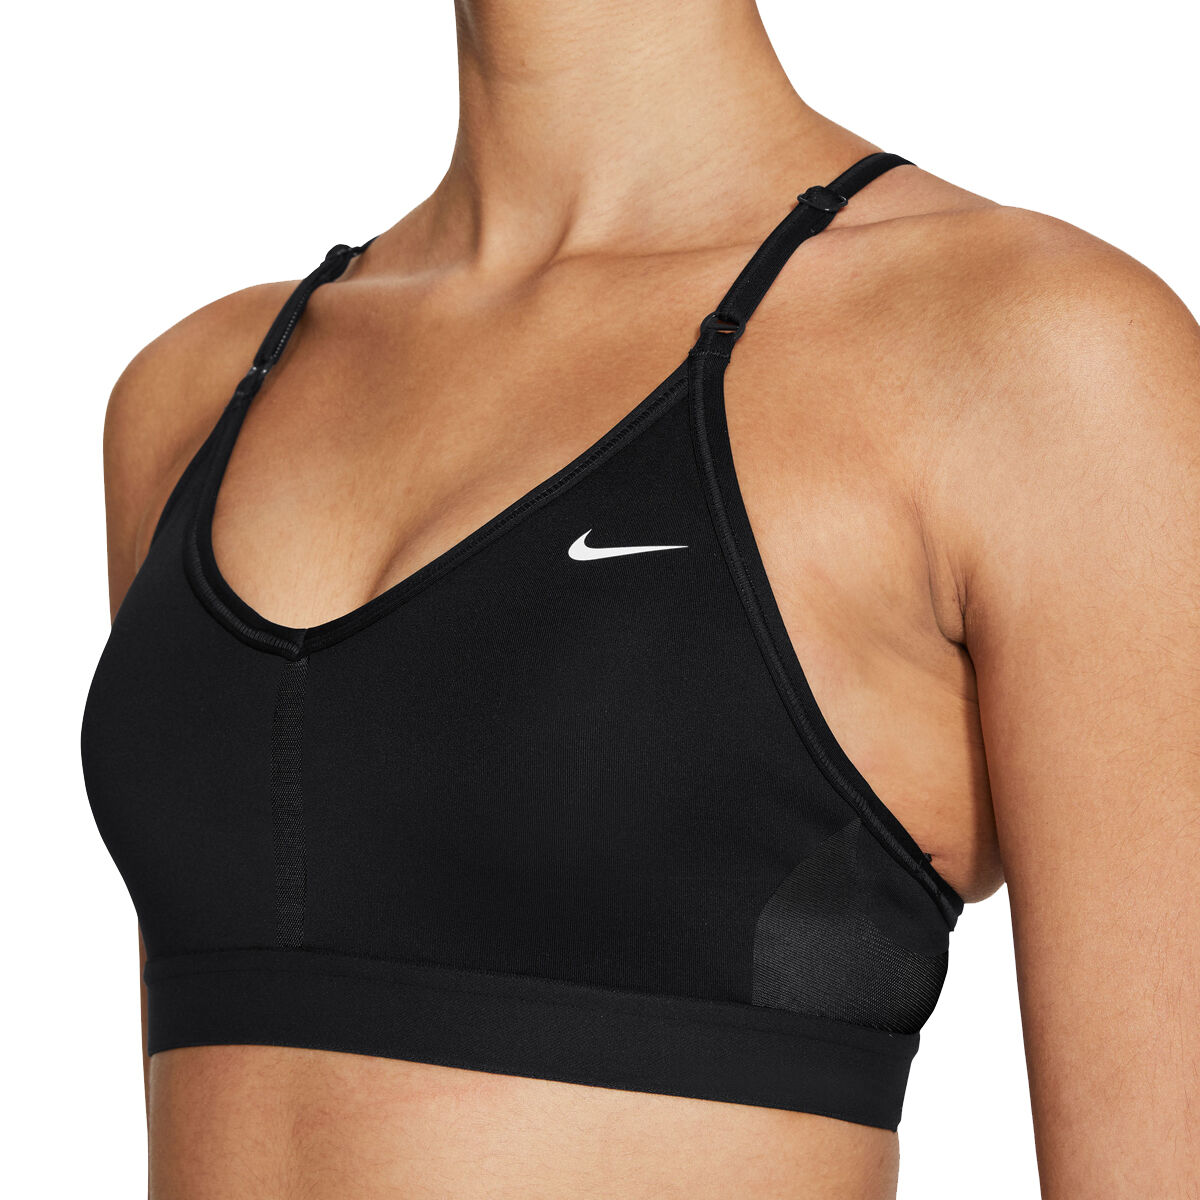 Nike, Intimates & Sleepwear, 3x New Black Nike Sports Bra